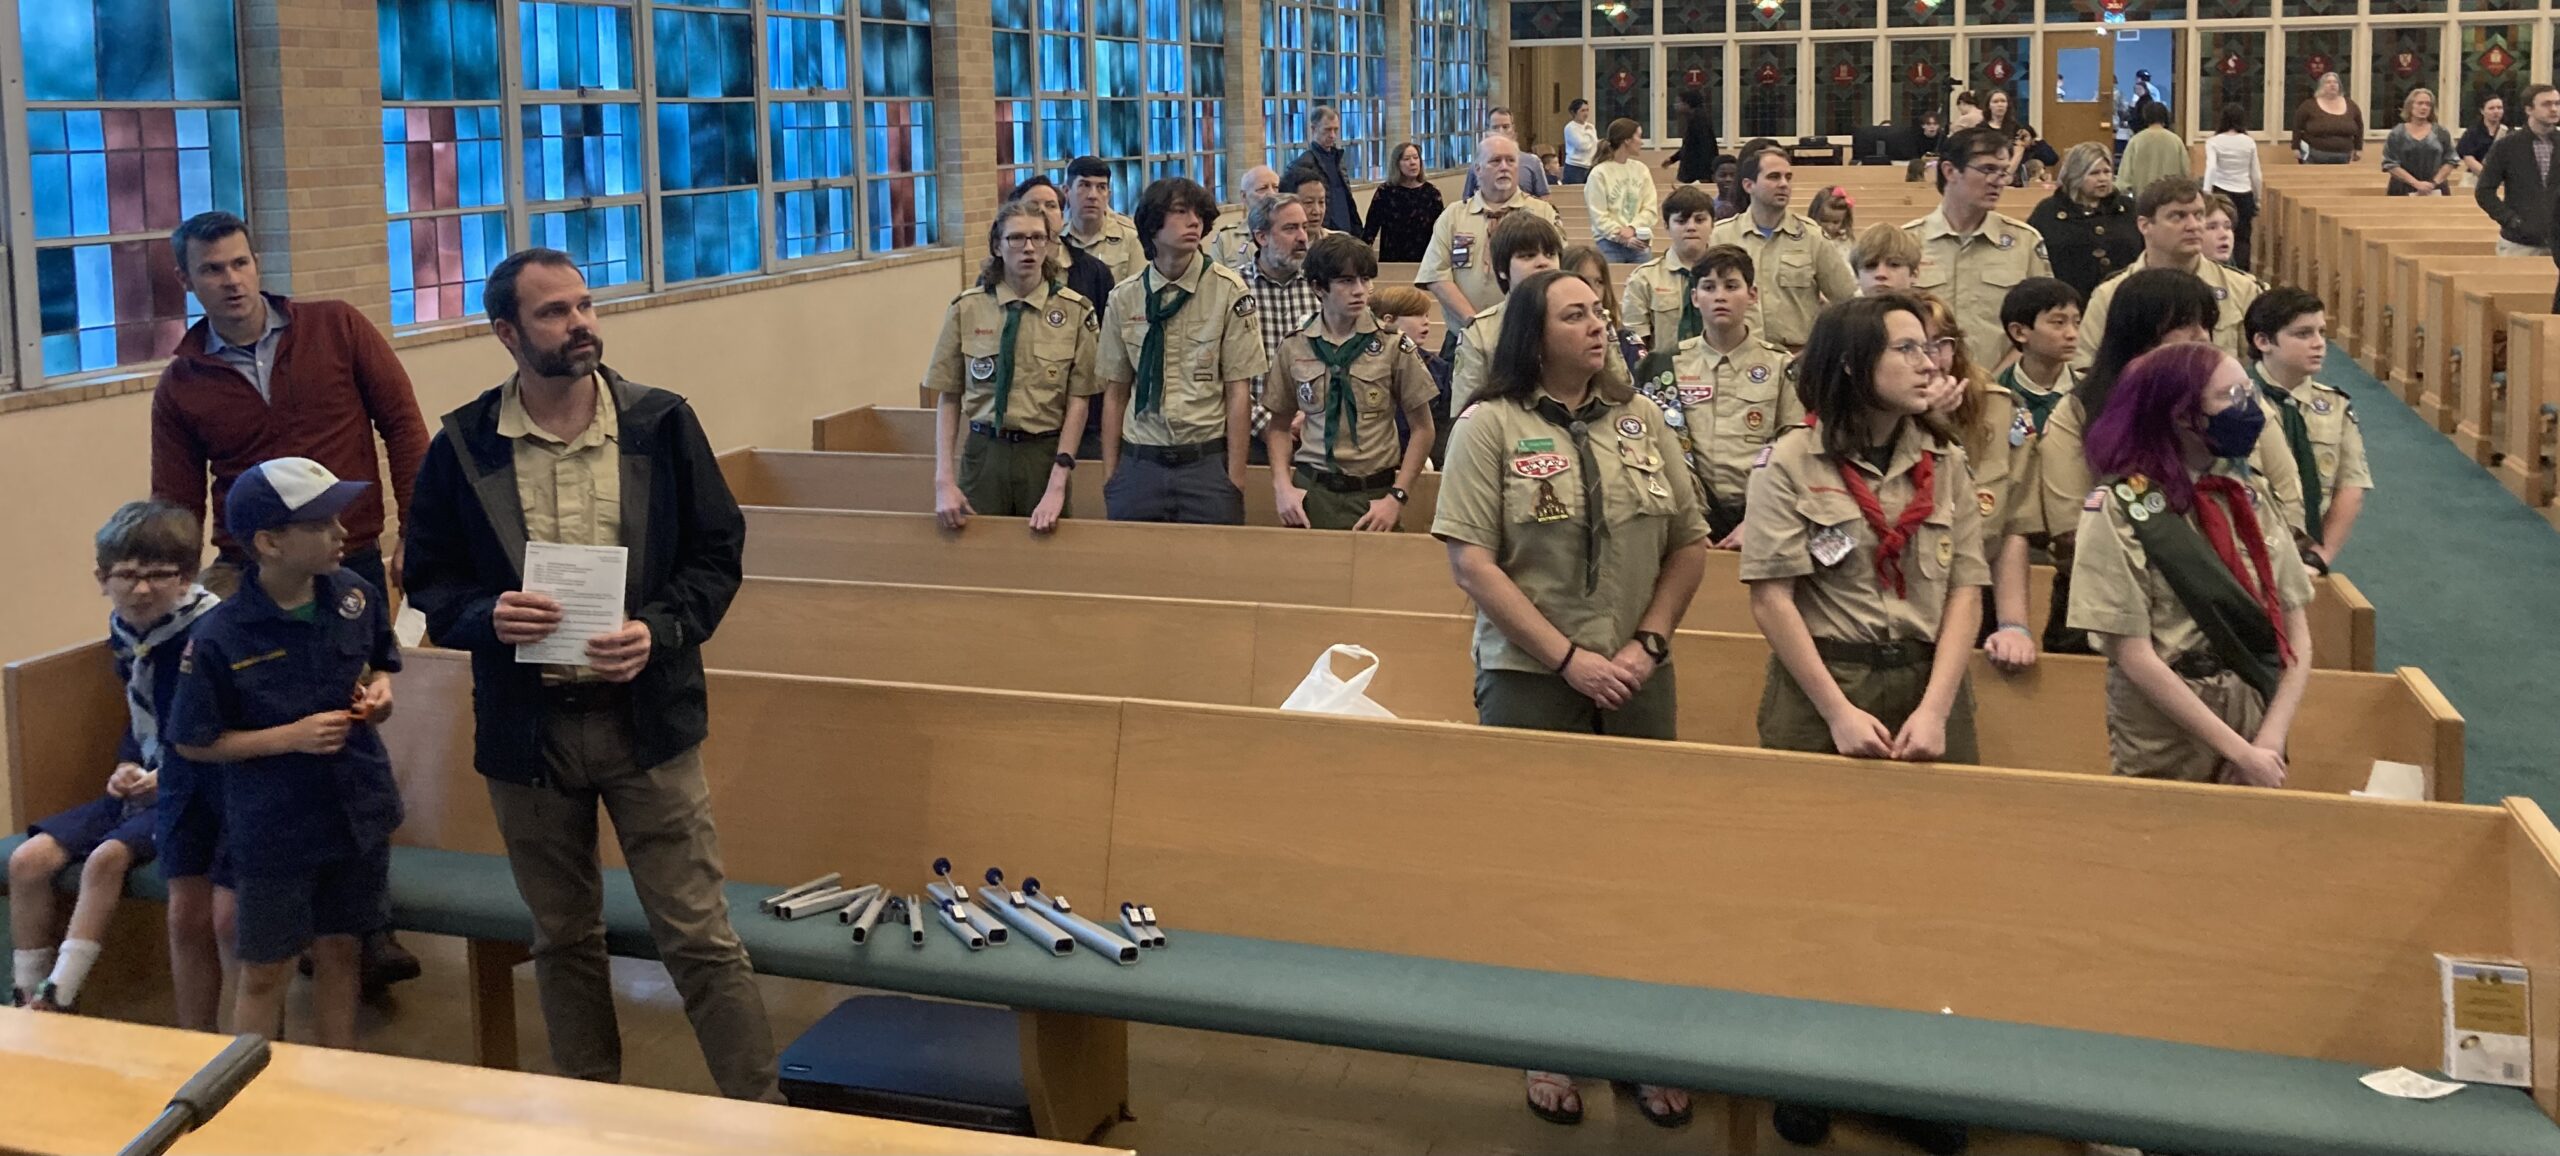 Scouts and leaders of Troop 410, Troop 2019, Pack 55